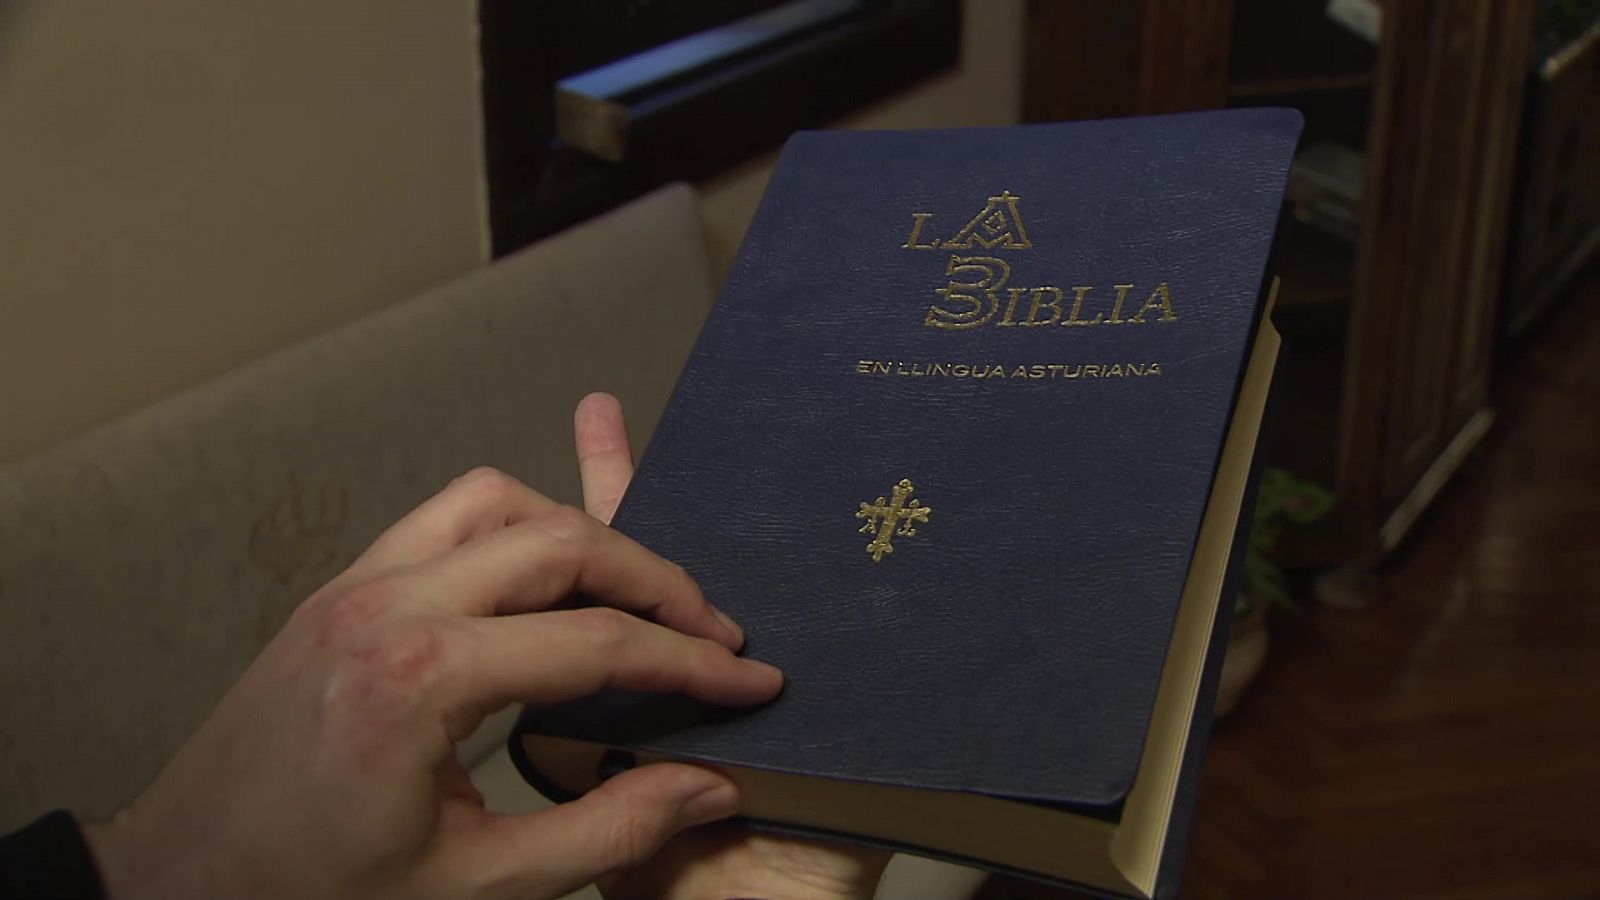 Buenas Noticias TV - La Biblia en llingua asturiana - ver ahora